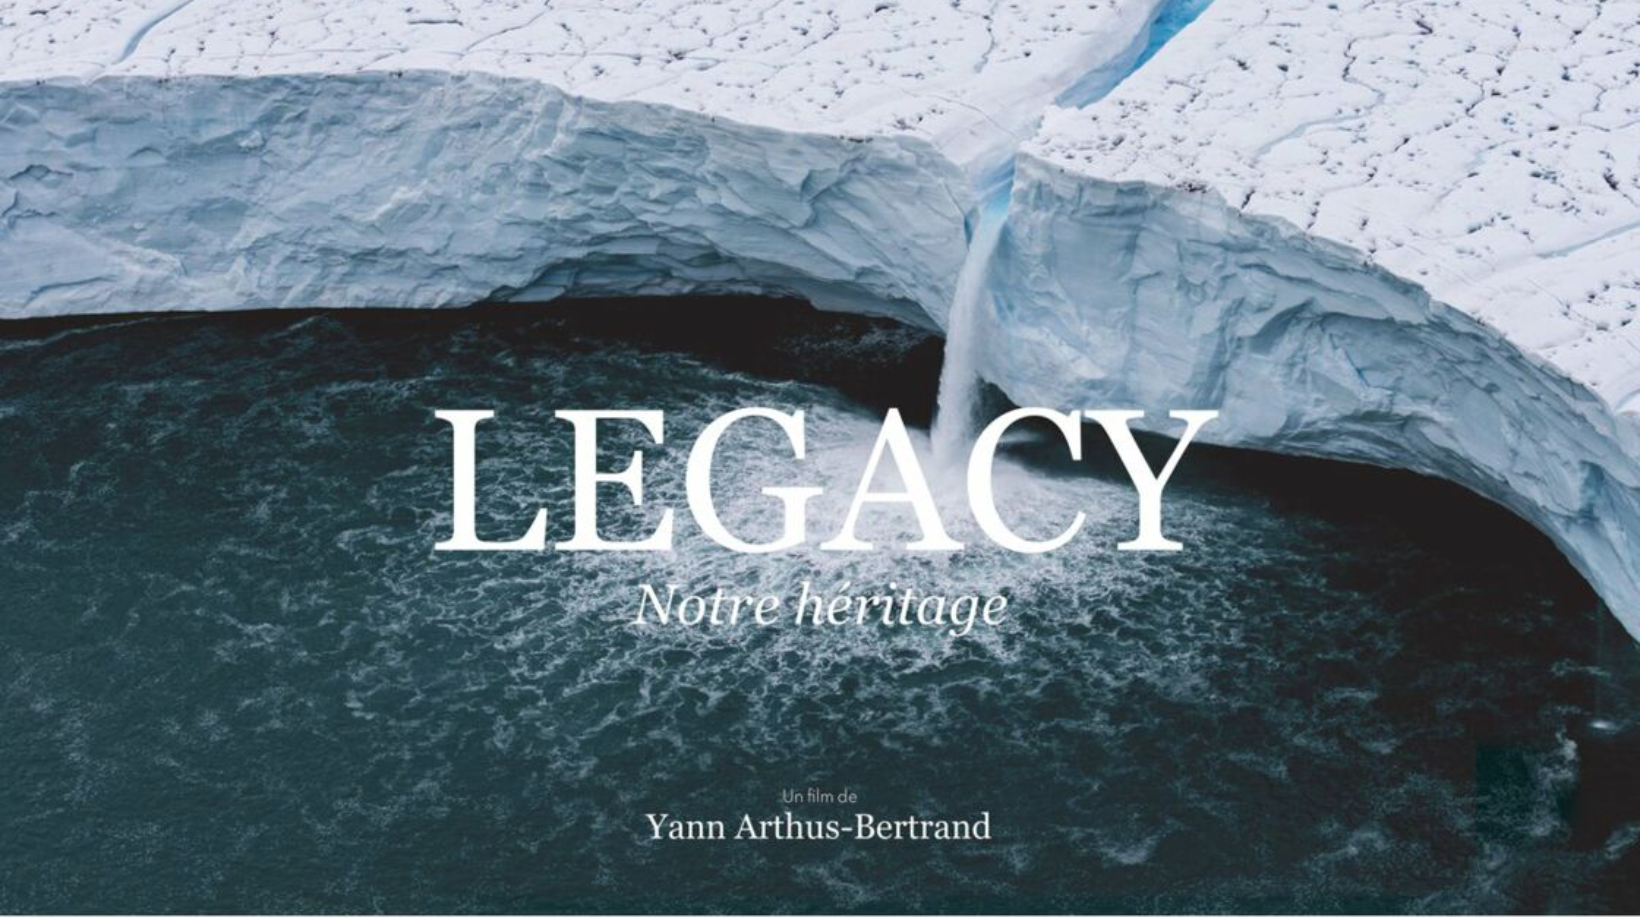 Legacy notre héritage de Yann Arthus-Bertrand. Crédit : copie écran